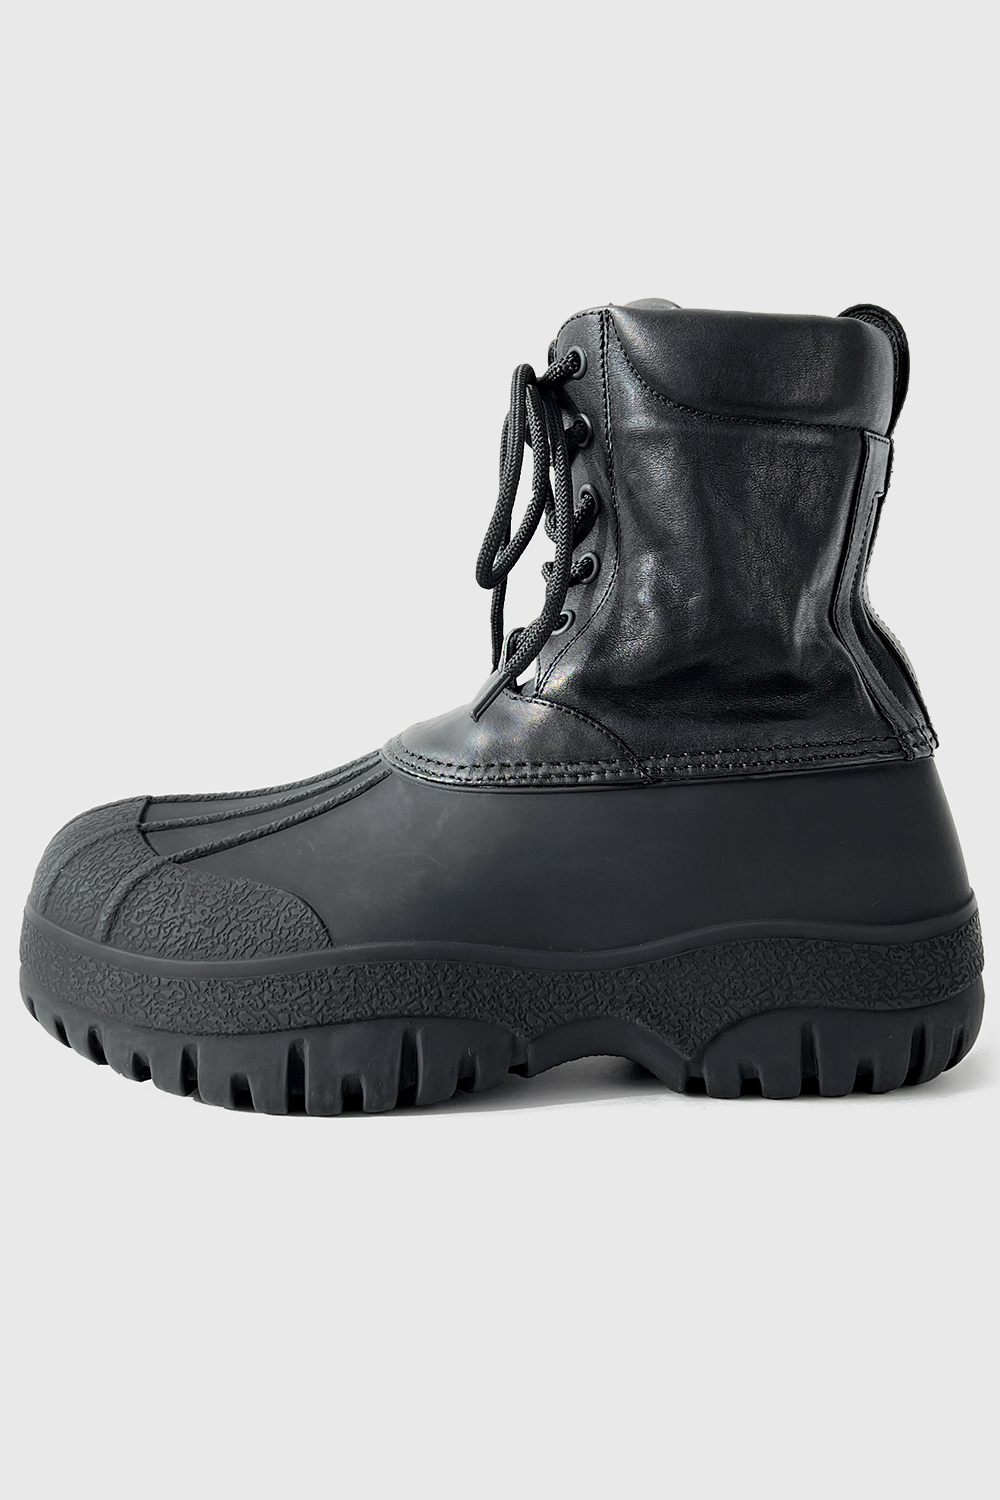 (초도수량 할인 이벤트) [기획상품] Huge : Rubber Sole Boots _ Cow Leather_Black